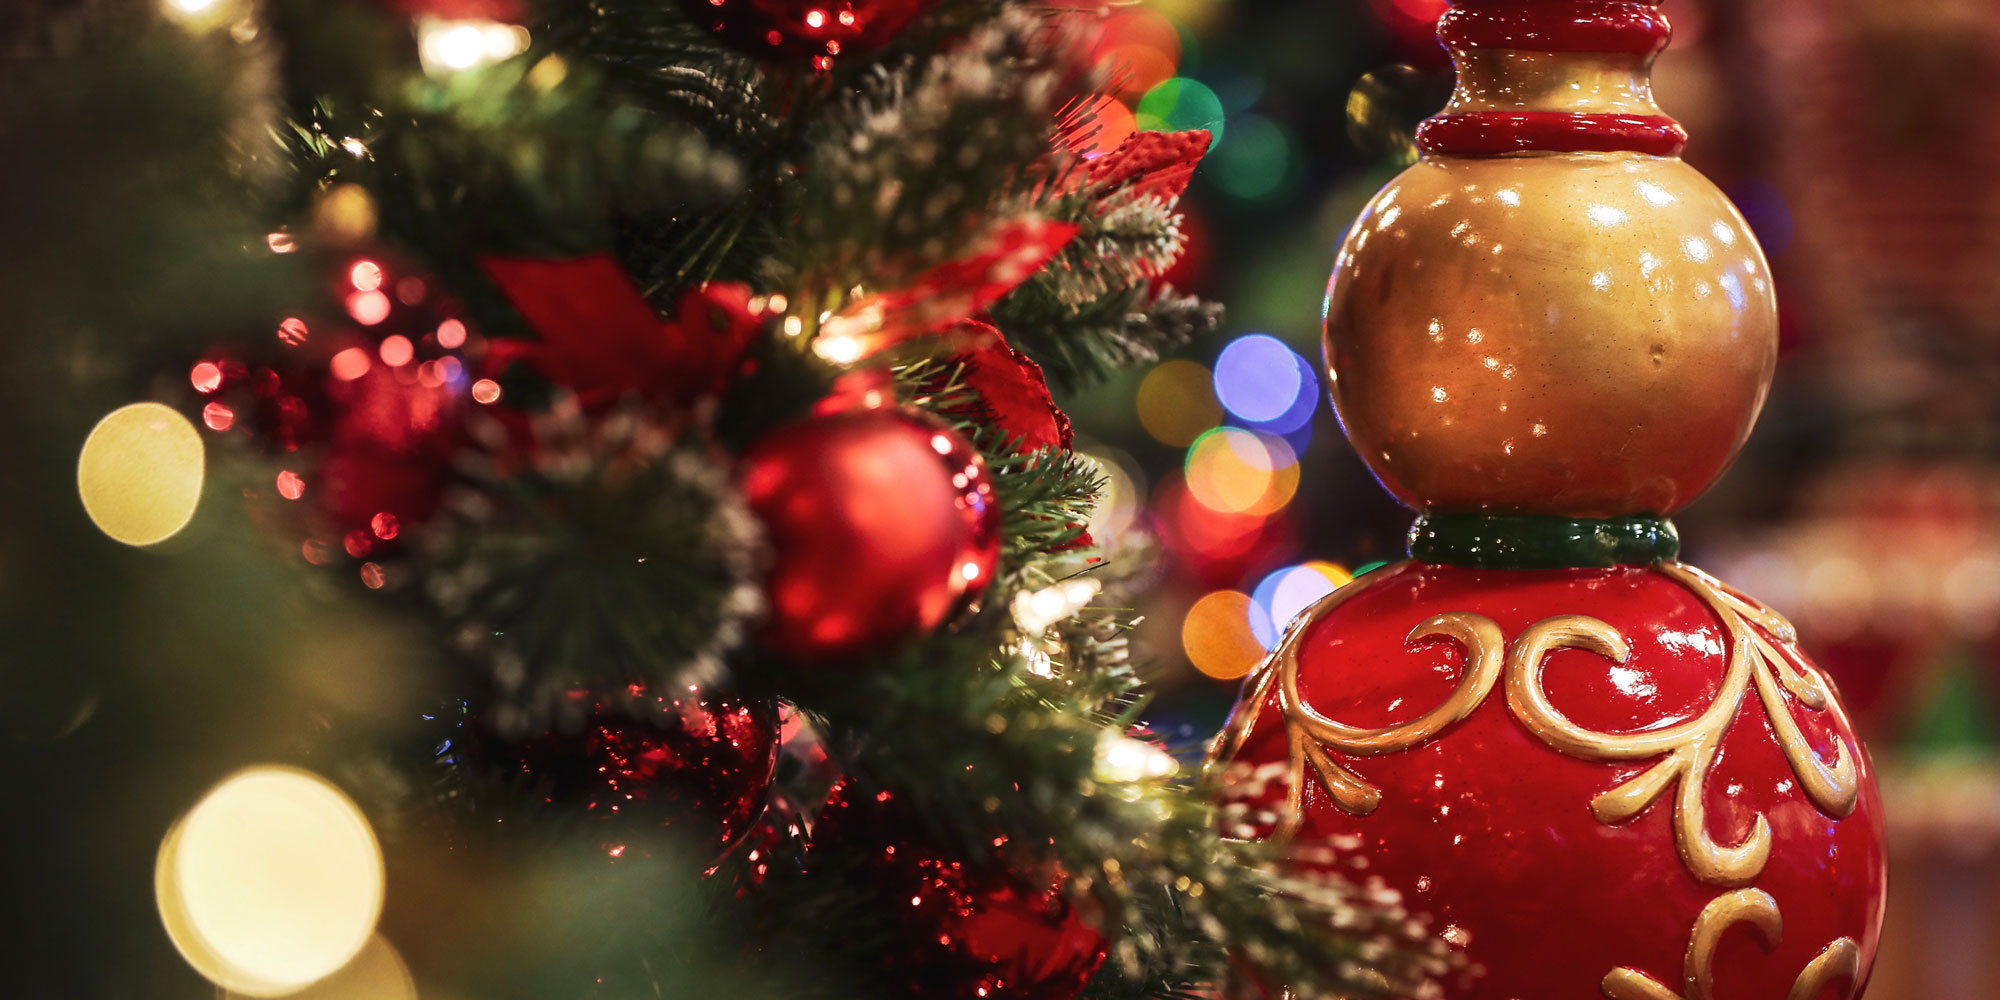 L'Emporio del Natale | Vendita alberi di natale e addobbi natalizi